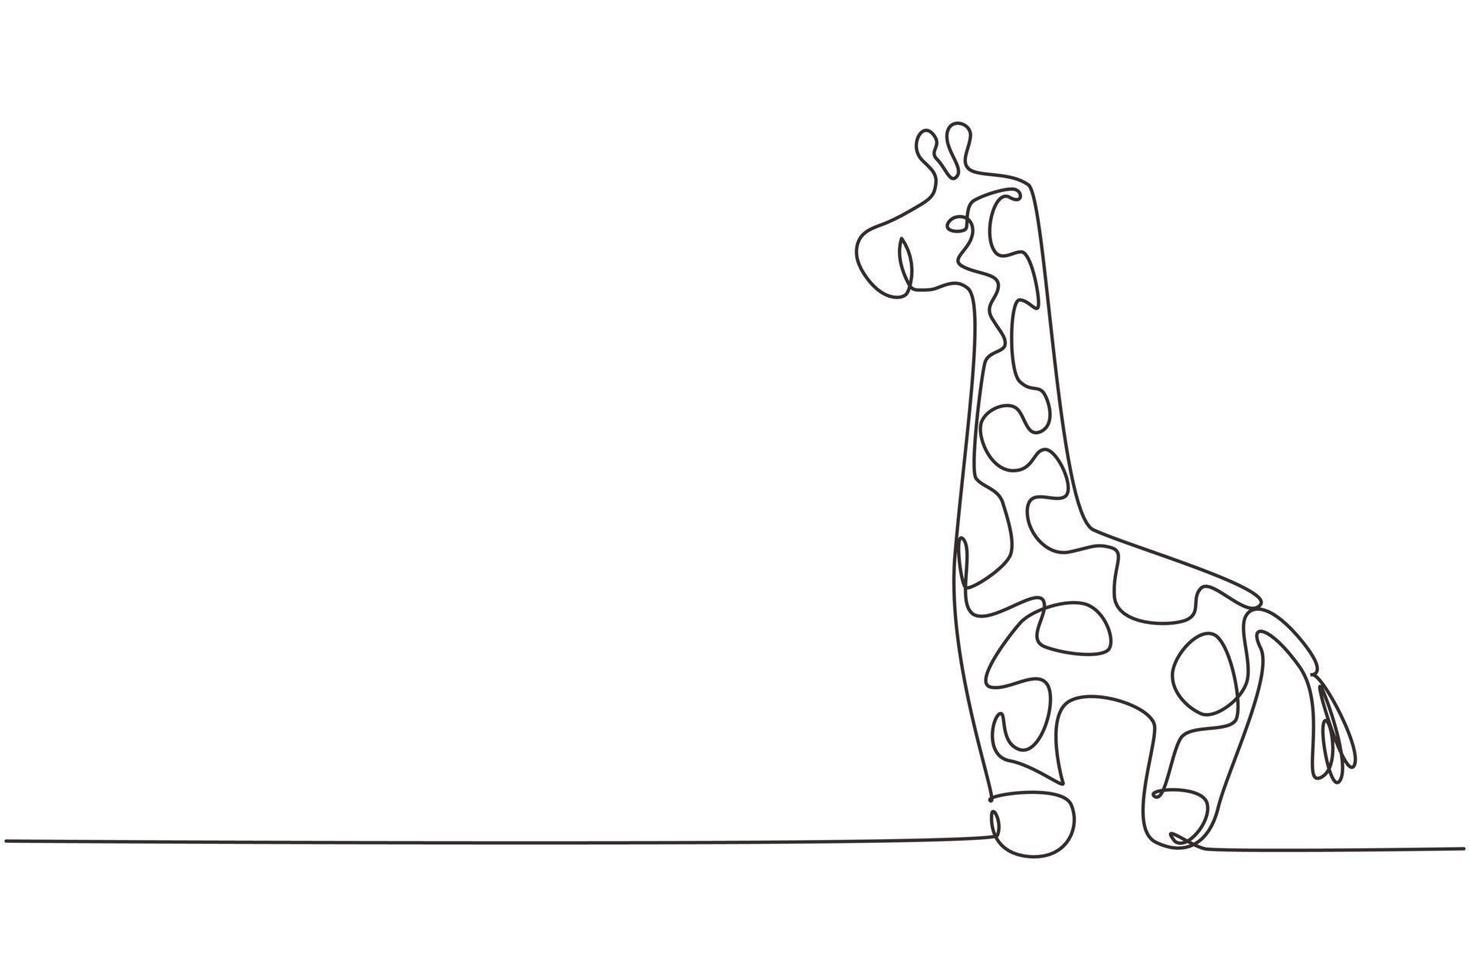 Muñeco de peluche de jirafa con dibujo de una sola línea continua. Marioneta de peluche de jirafa. juguete de jirafa de peluche. juguetes de jirafa amarilla para niños. Ilustración de vector de diseño gráfico de dibujo de una línea dinámica